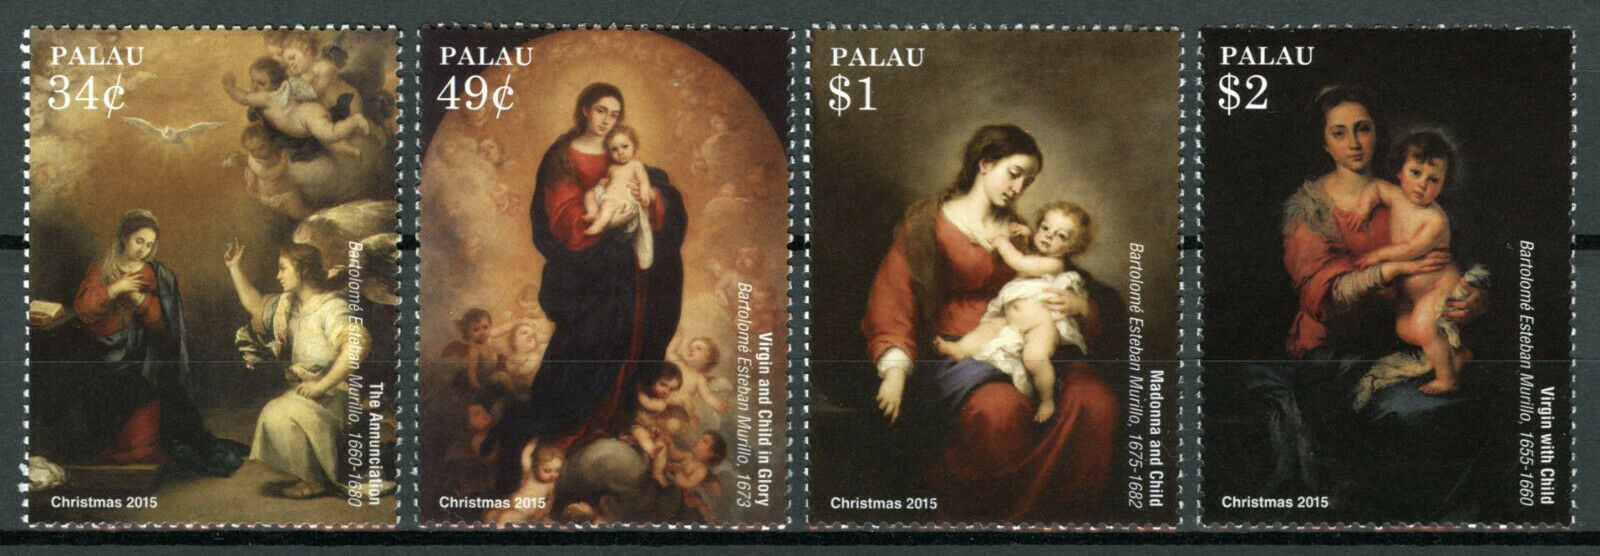 Palau 2015 MNH Christmas Stamps Bartolome Esteban Murillo Art Paintings 4v Set